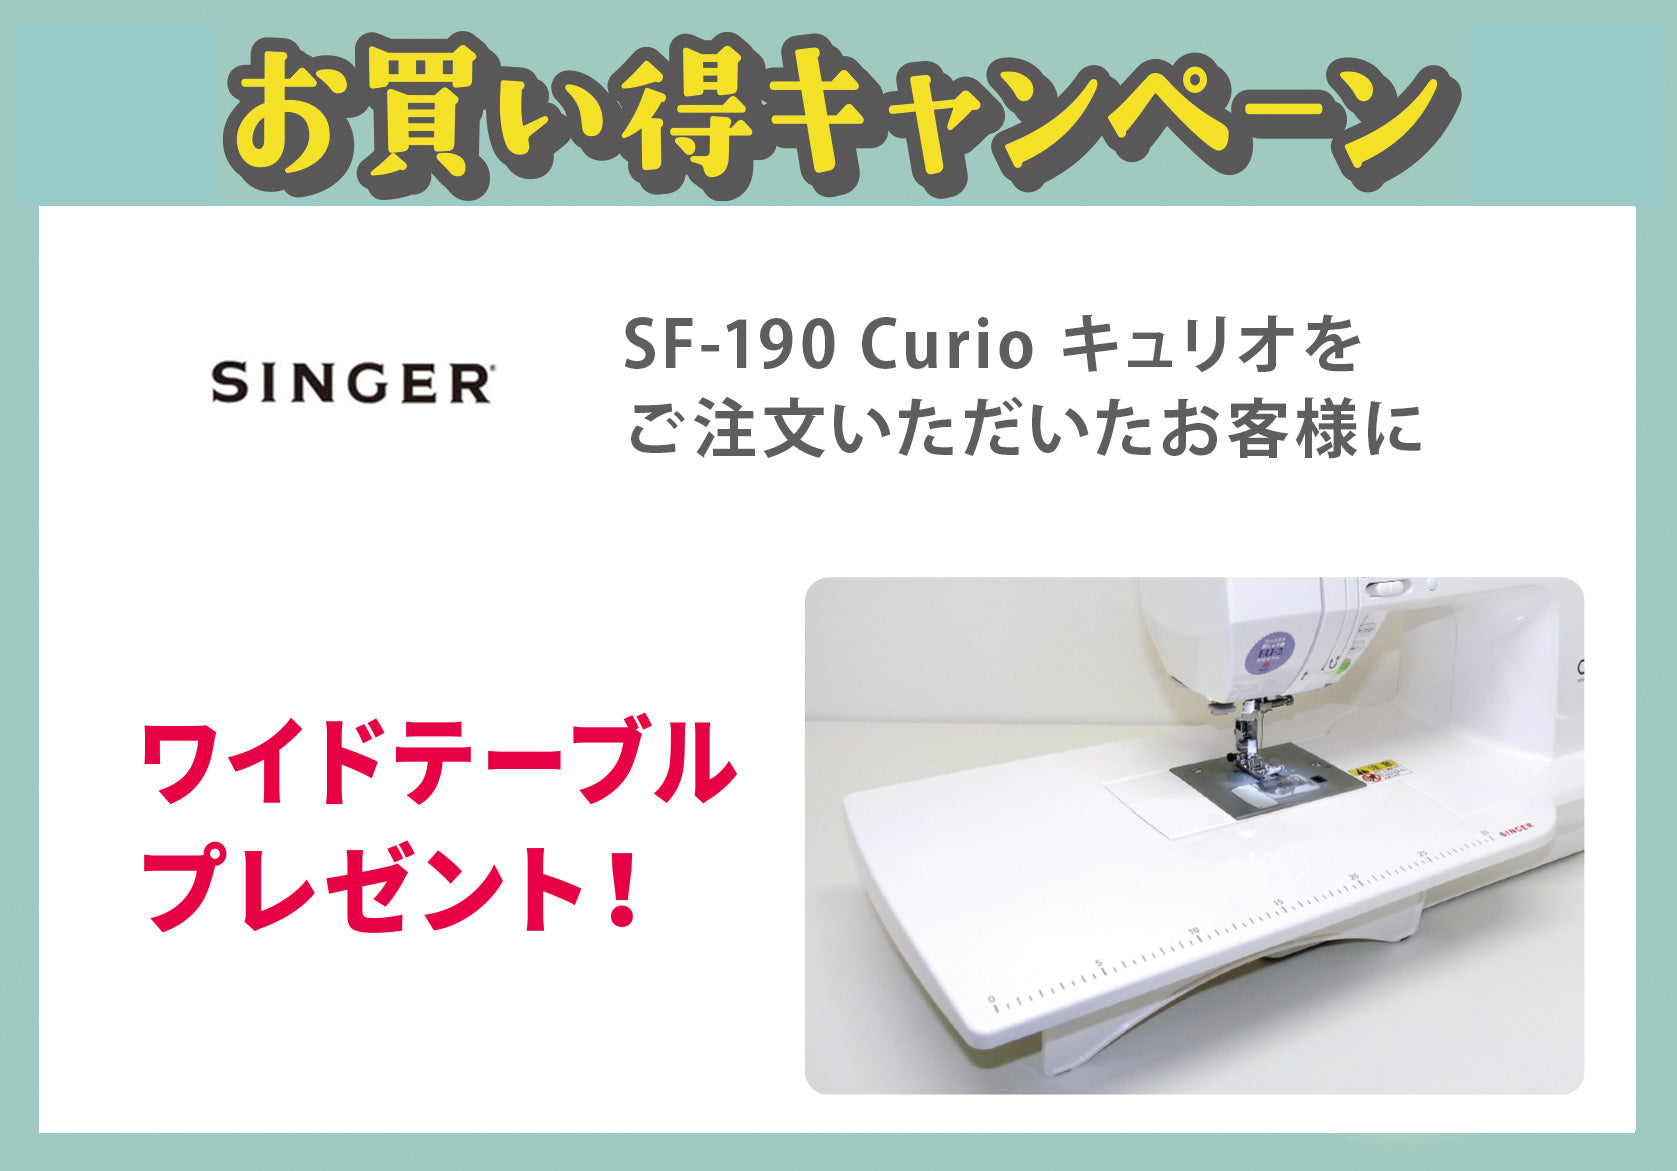 シンガー コンピューターミシン SF-190 Curio キュリオ 【送料無料